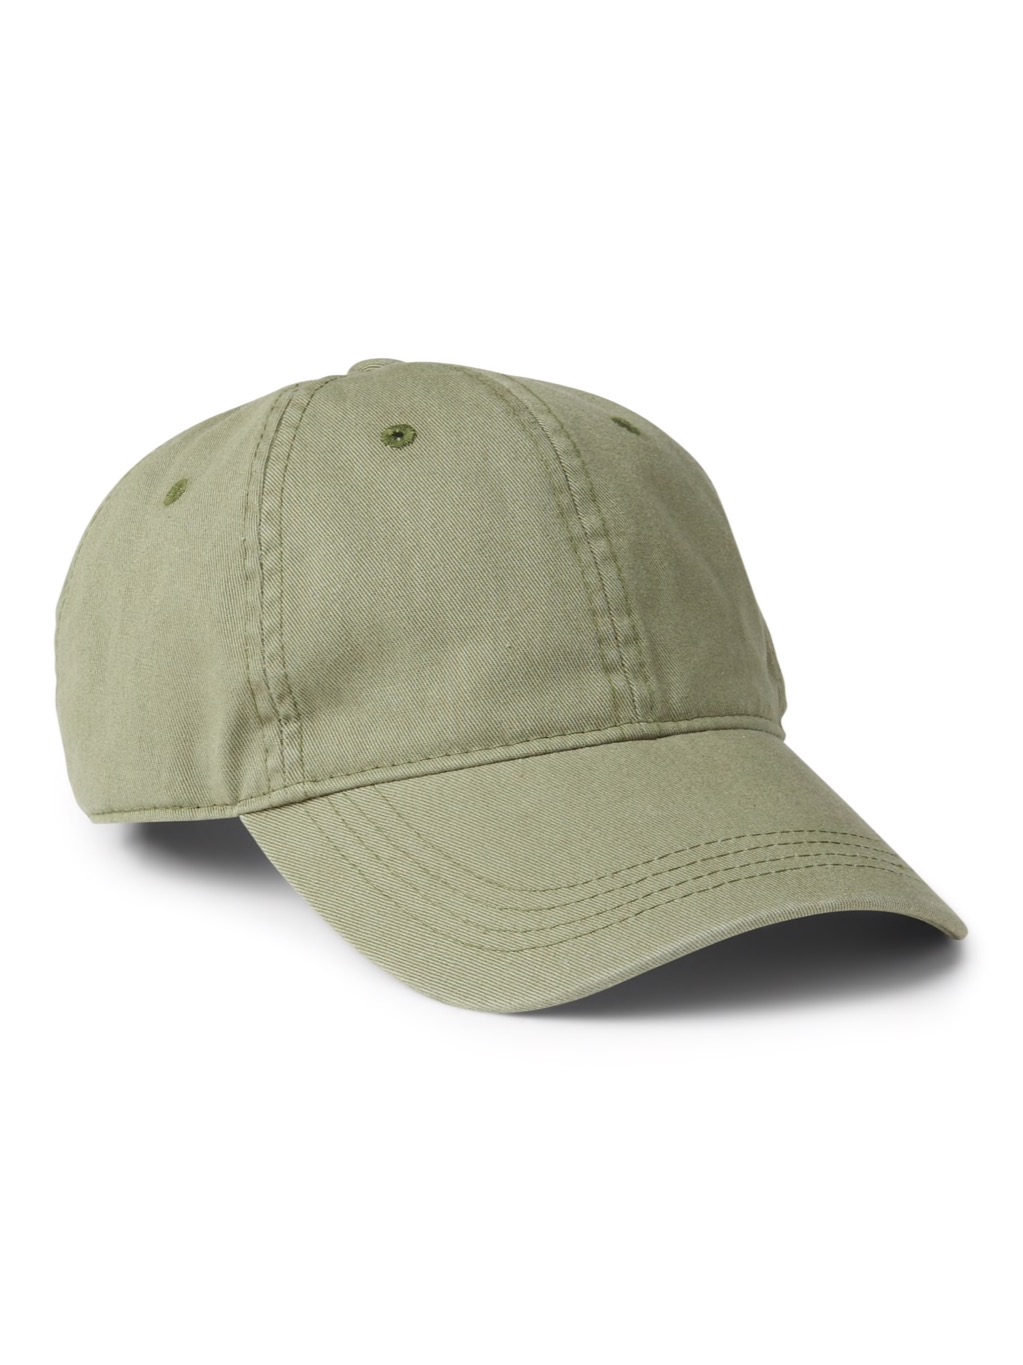 gap hat summer essentials 